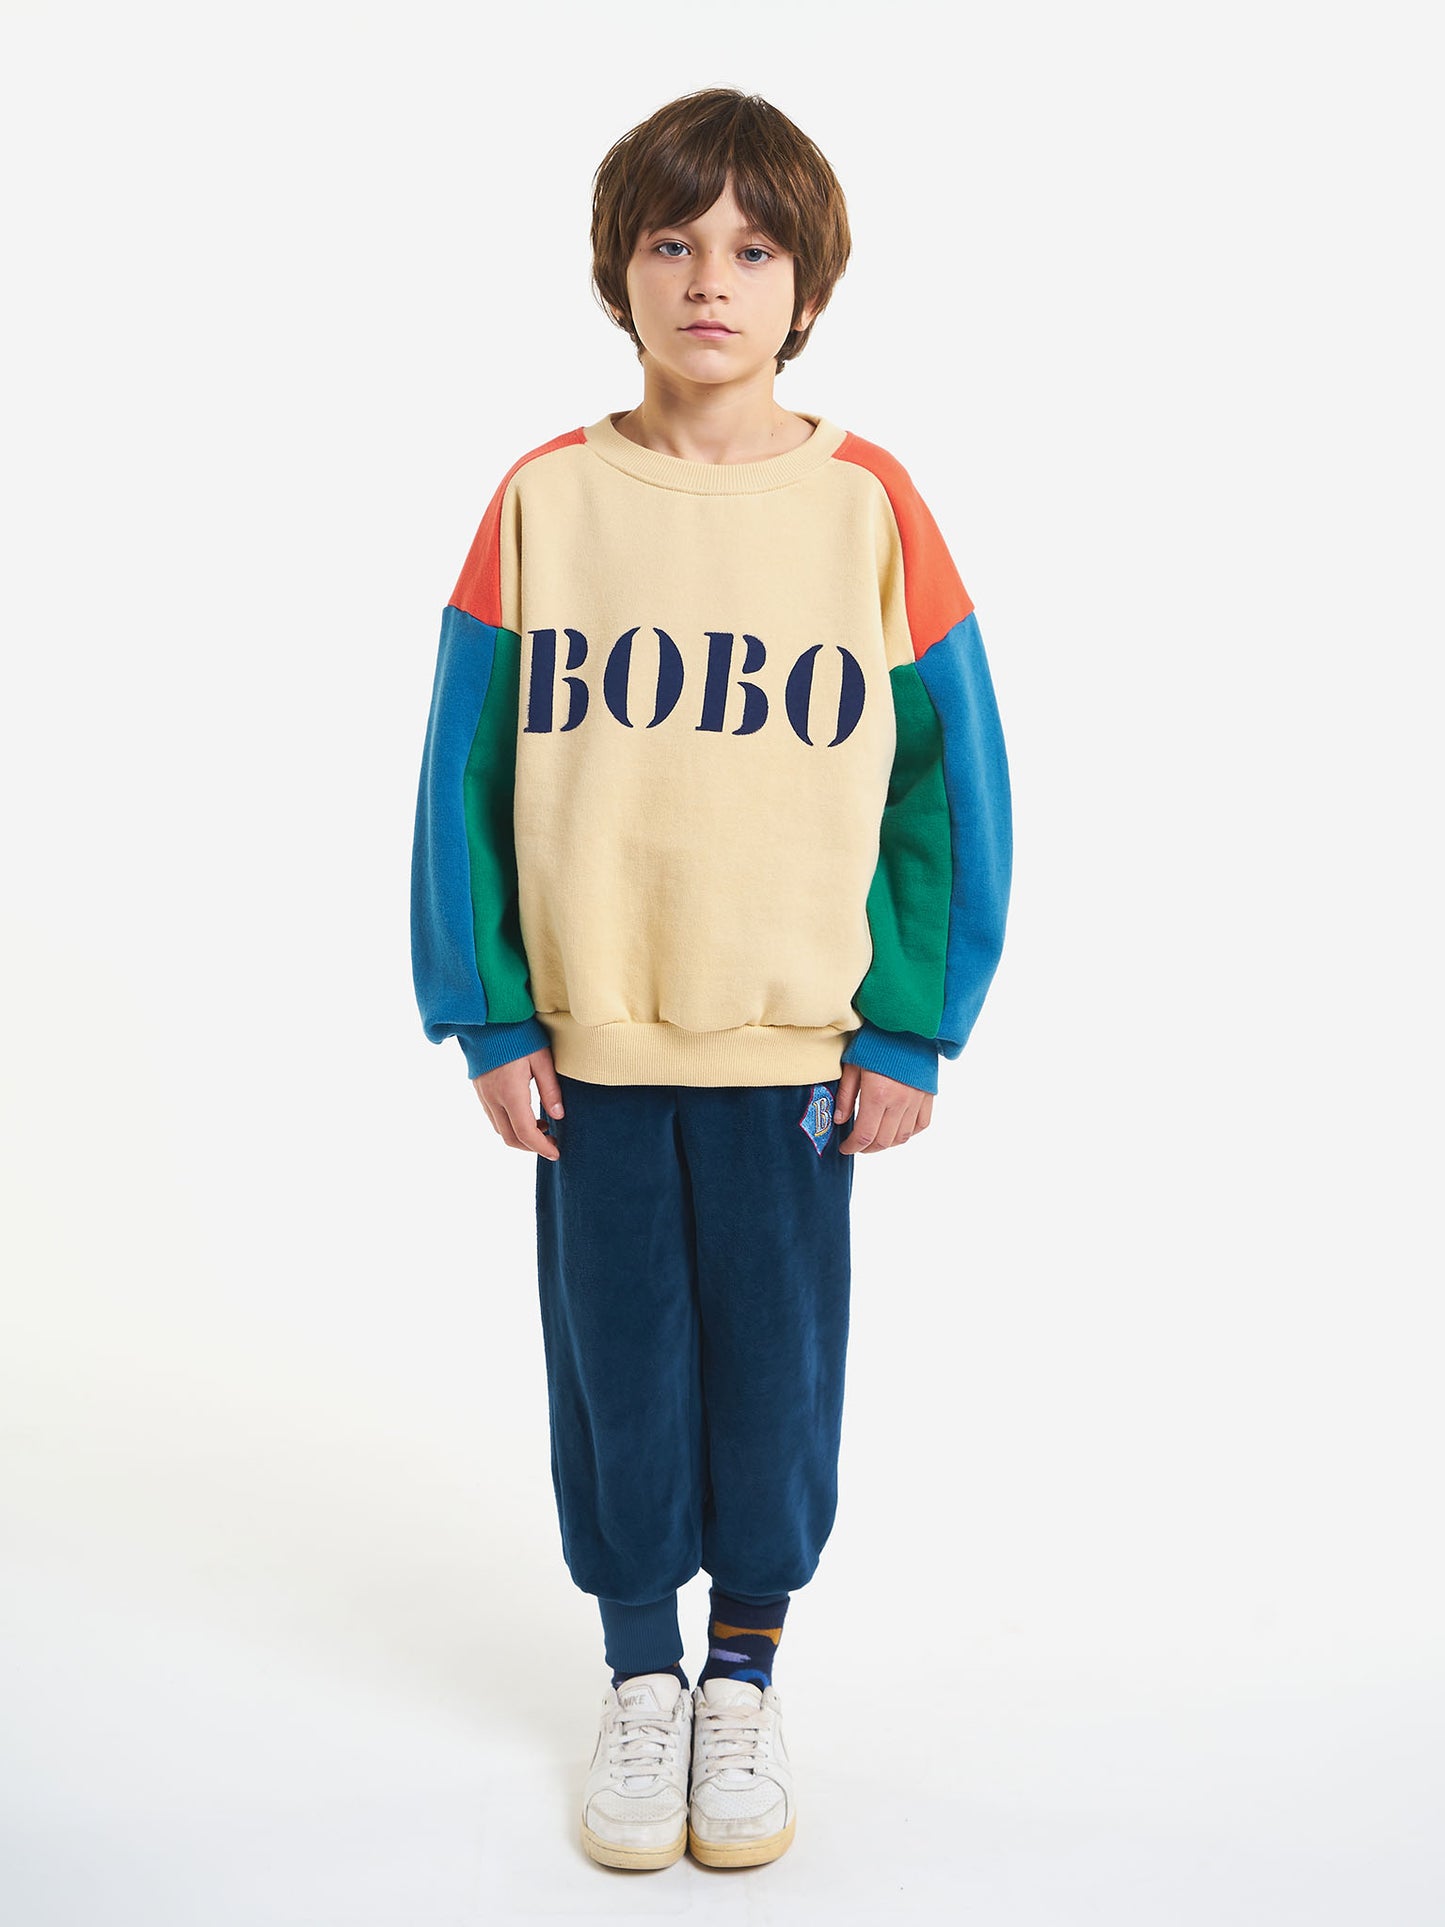 Bobo Blue sweatshirt